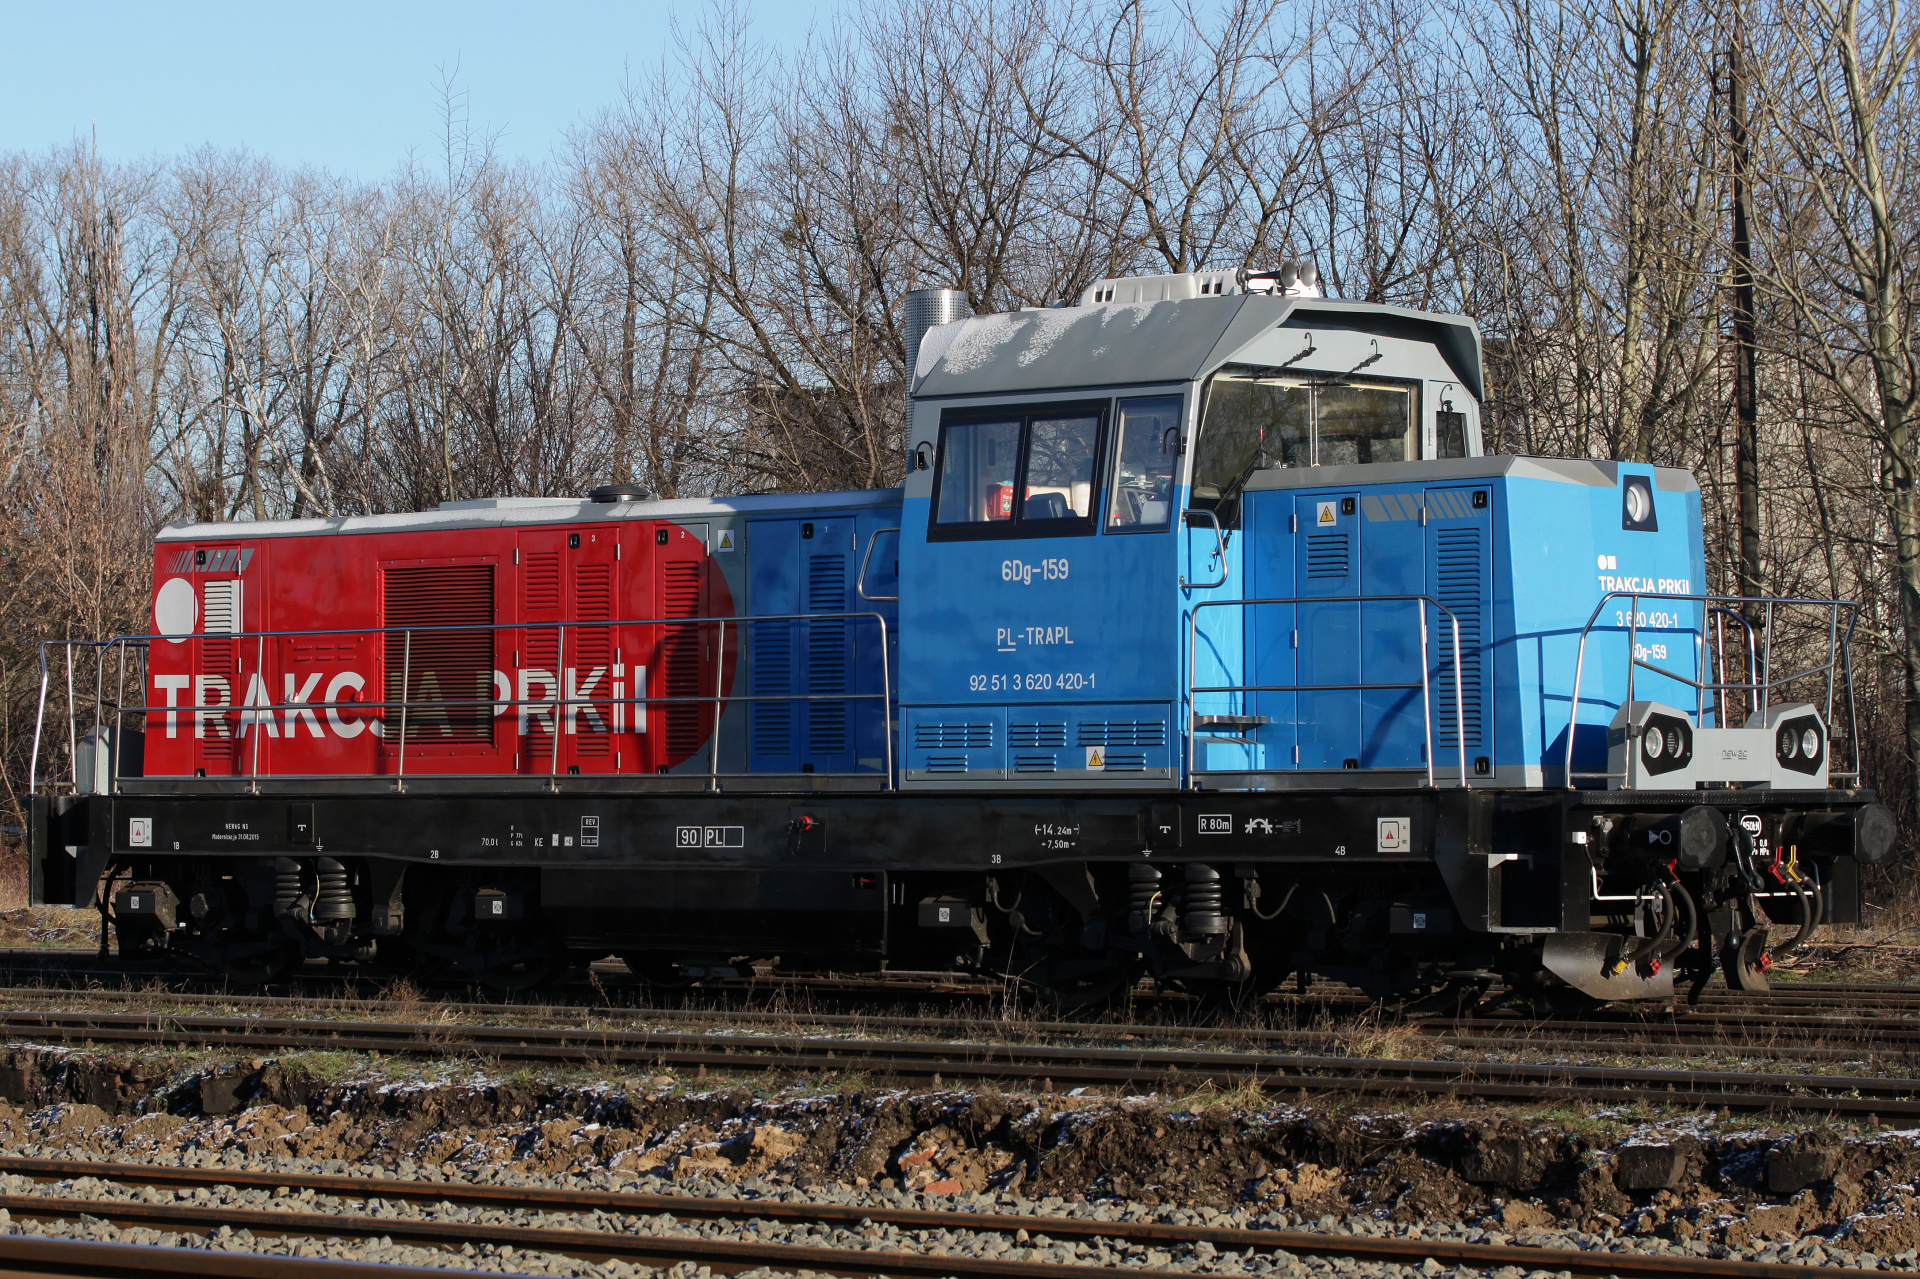 Newag 6Dg-159 (Pojazdy » Pociągi i lokomotywy)